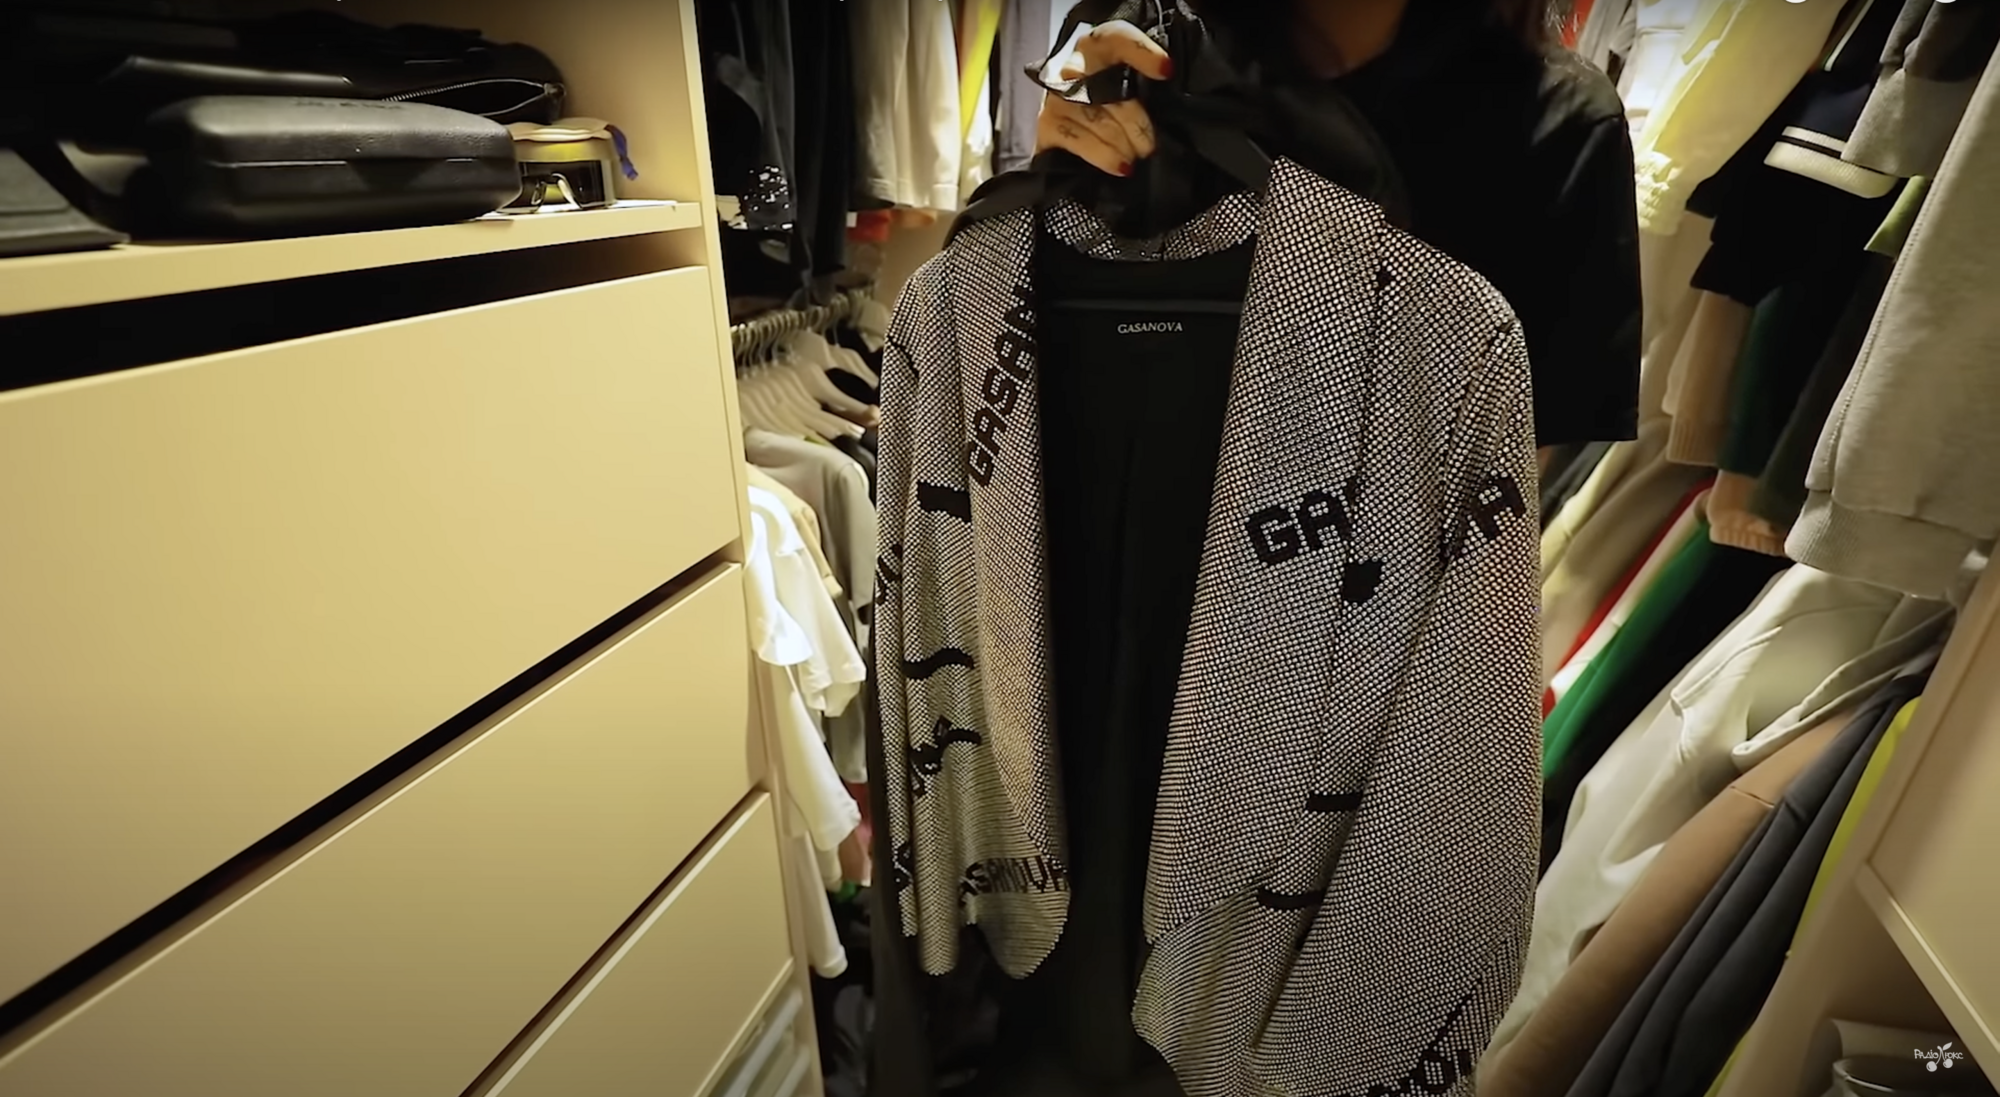 Блогерша Алхим, которая унижала украинцев, показала свою коллекцию шуб и самую дорогую вещь гардероба – пиджак за 5 тысяч евро